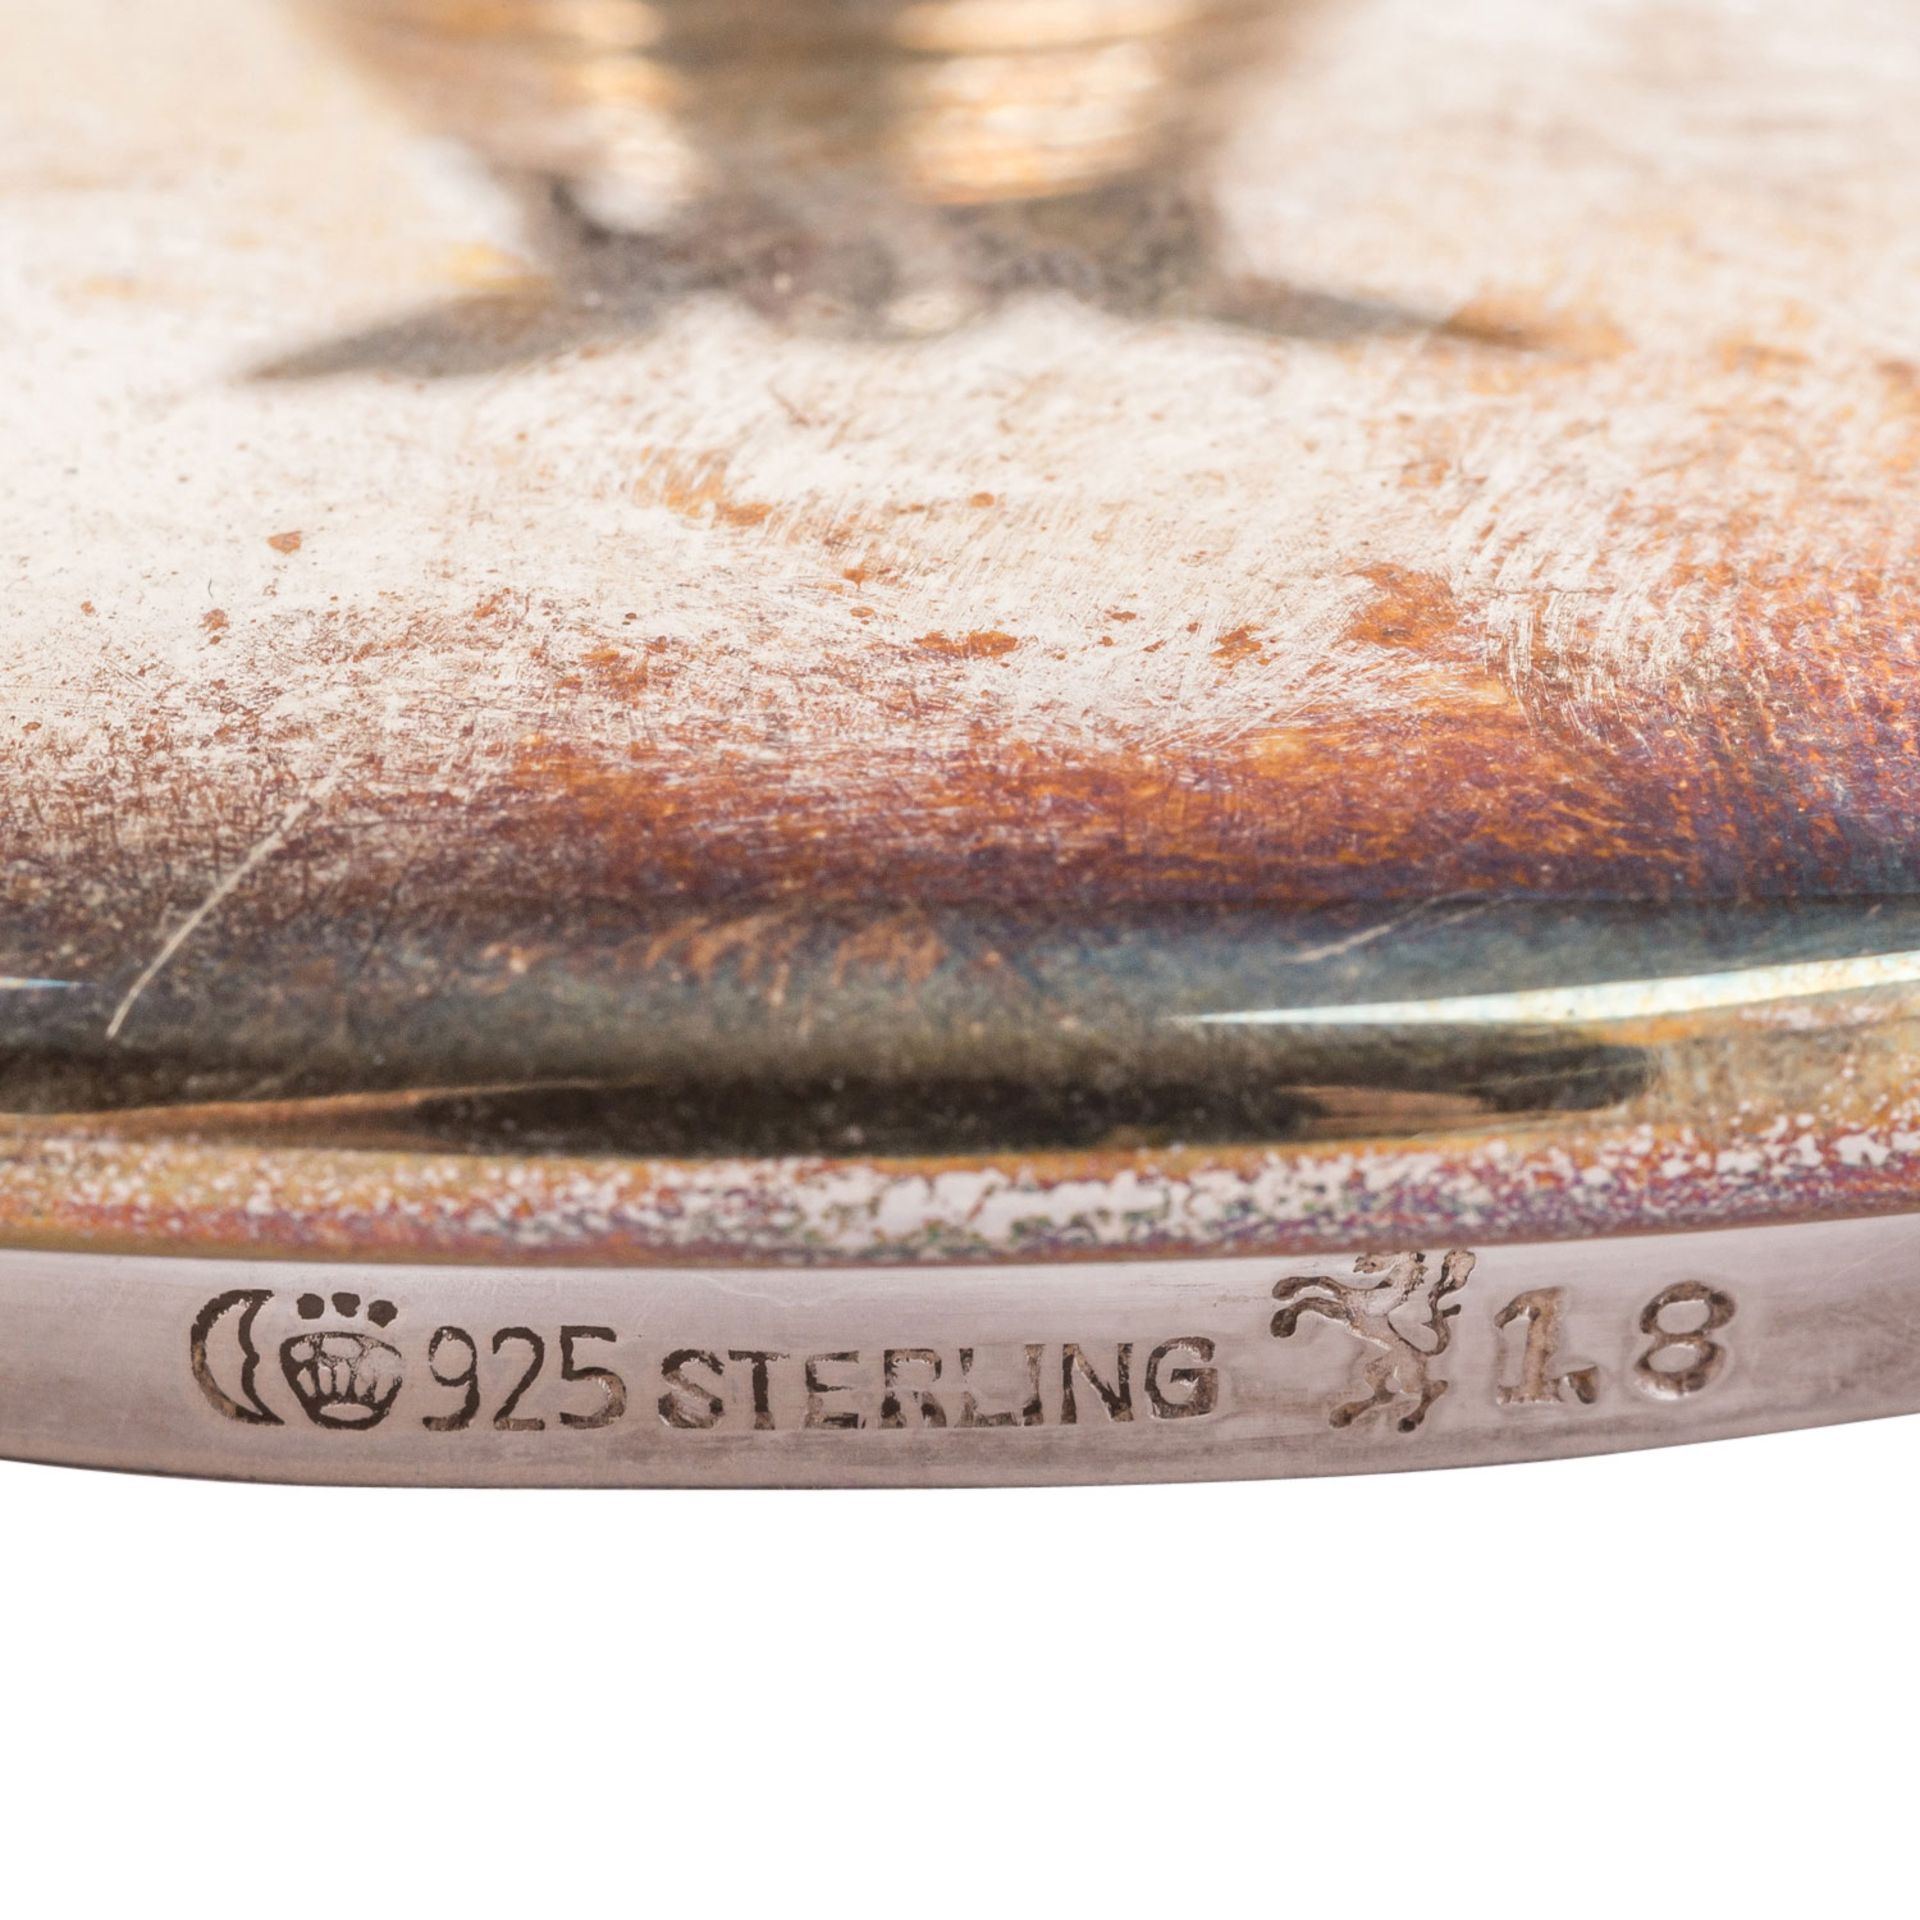 GEBRÜDER KÜHN "Set mit drei Gläsern für Marmelade und Honig" 925er Silber. - Bild 7 aus 7